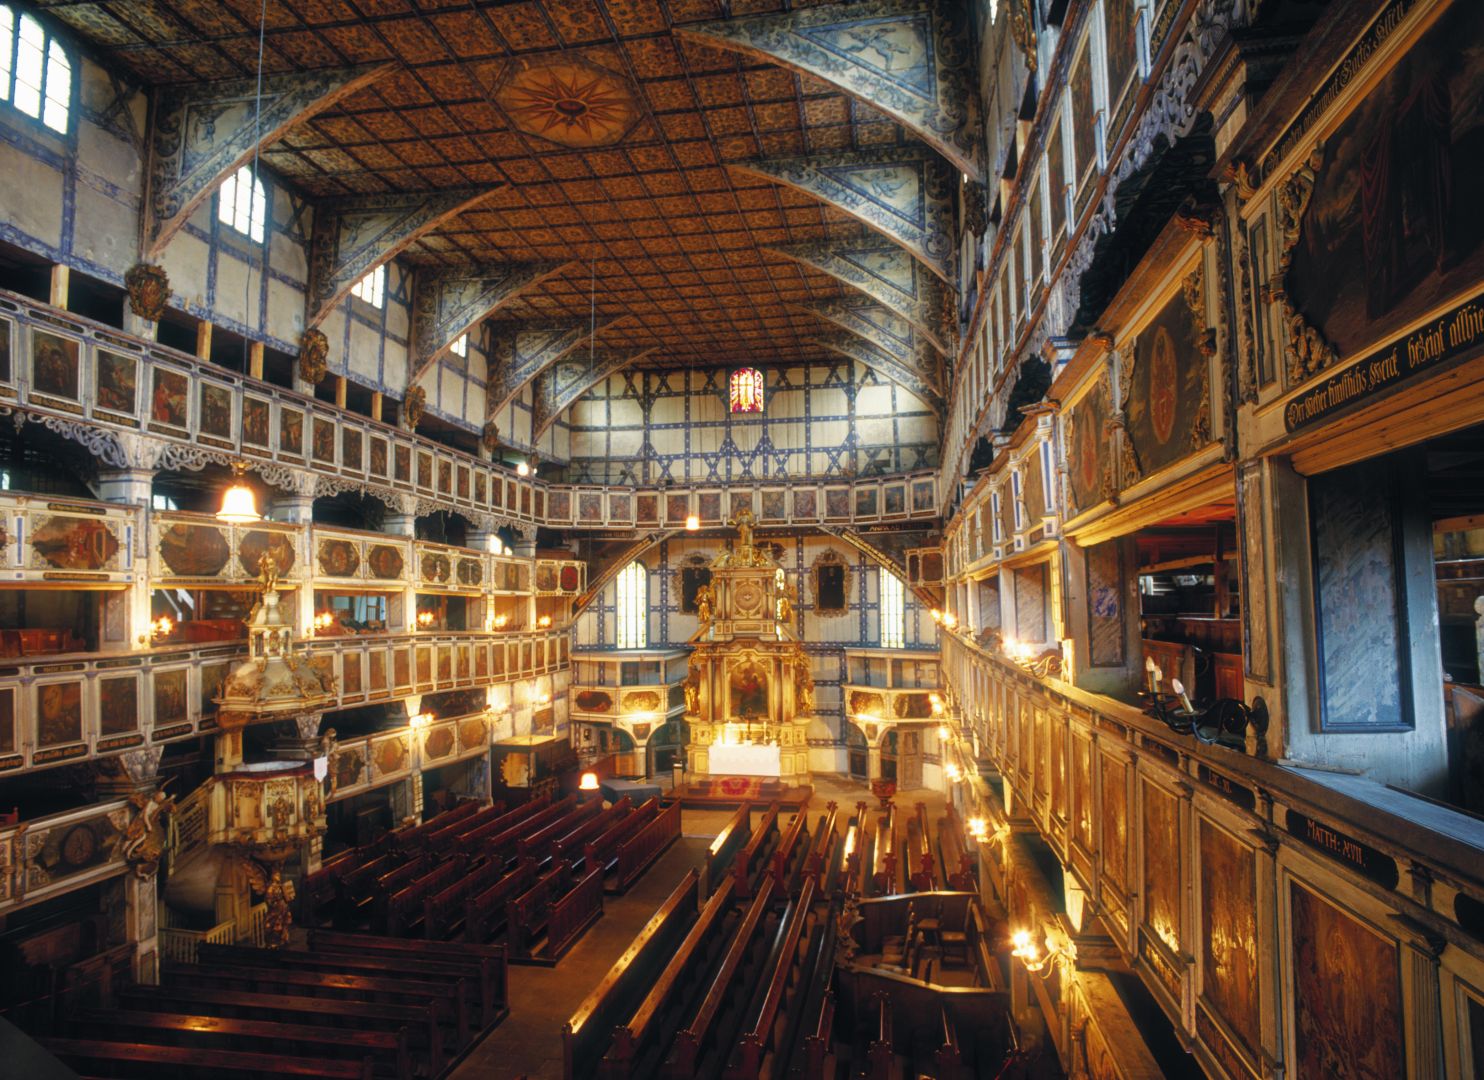 Historic interior